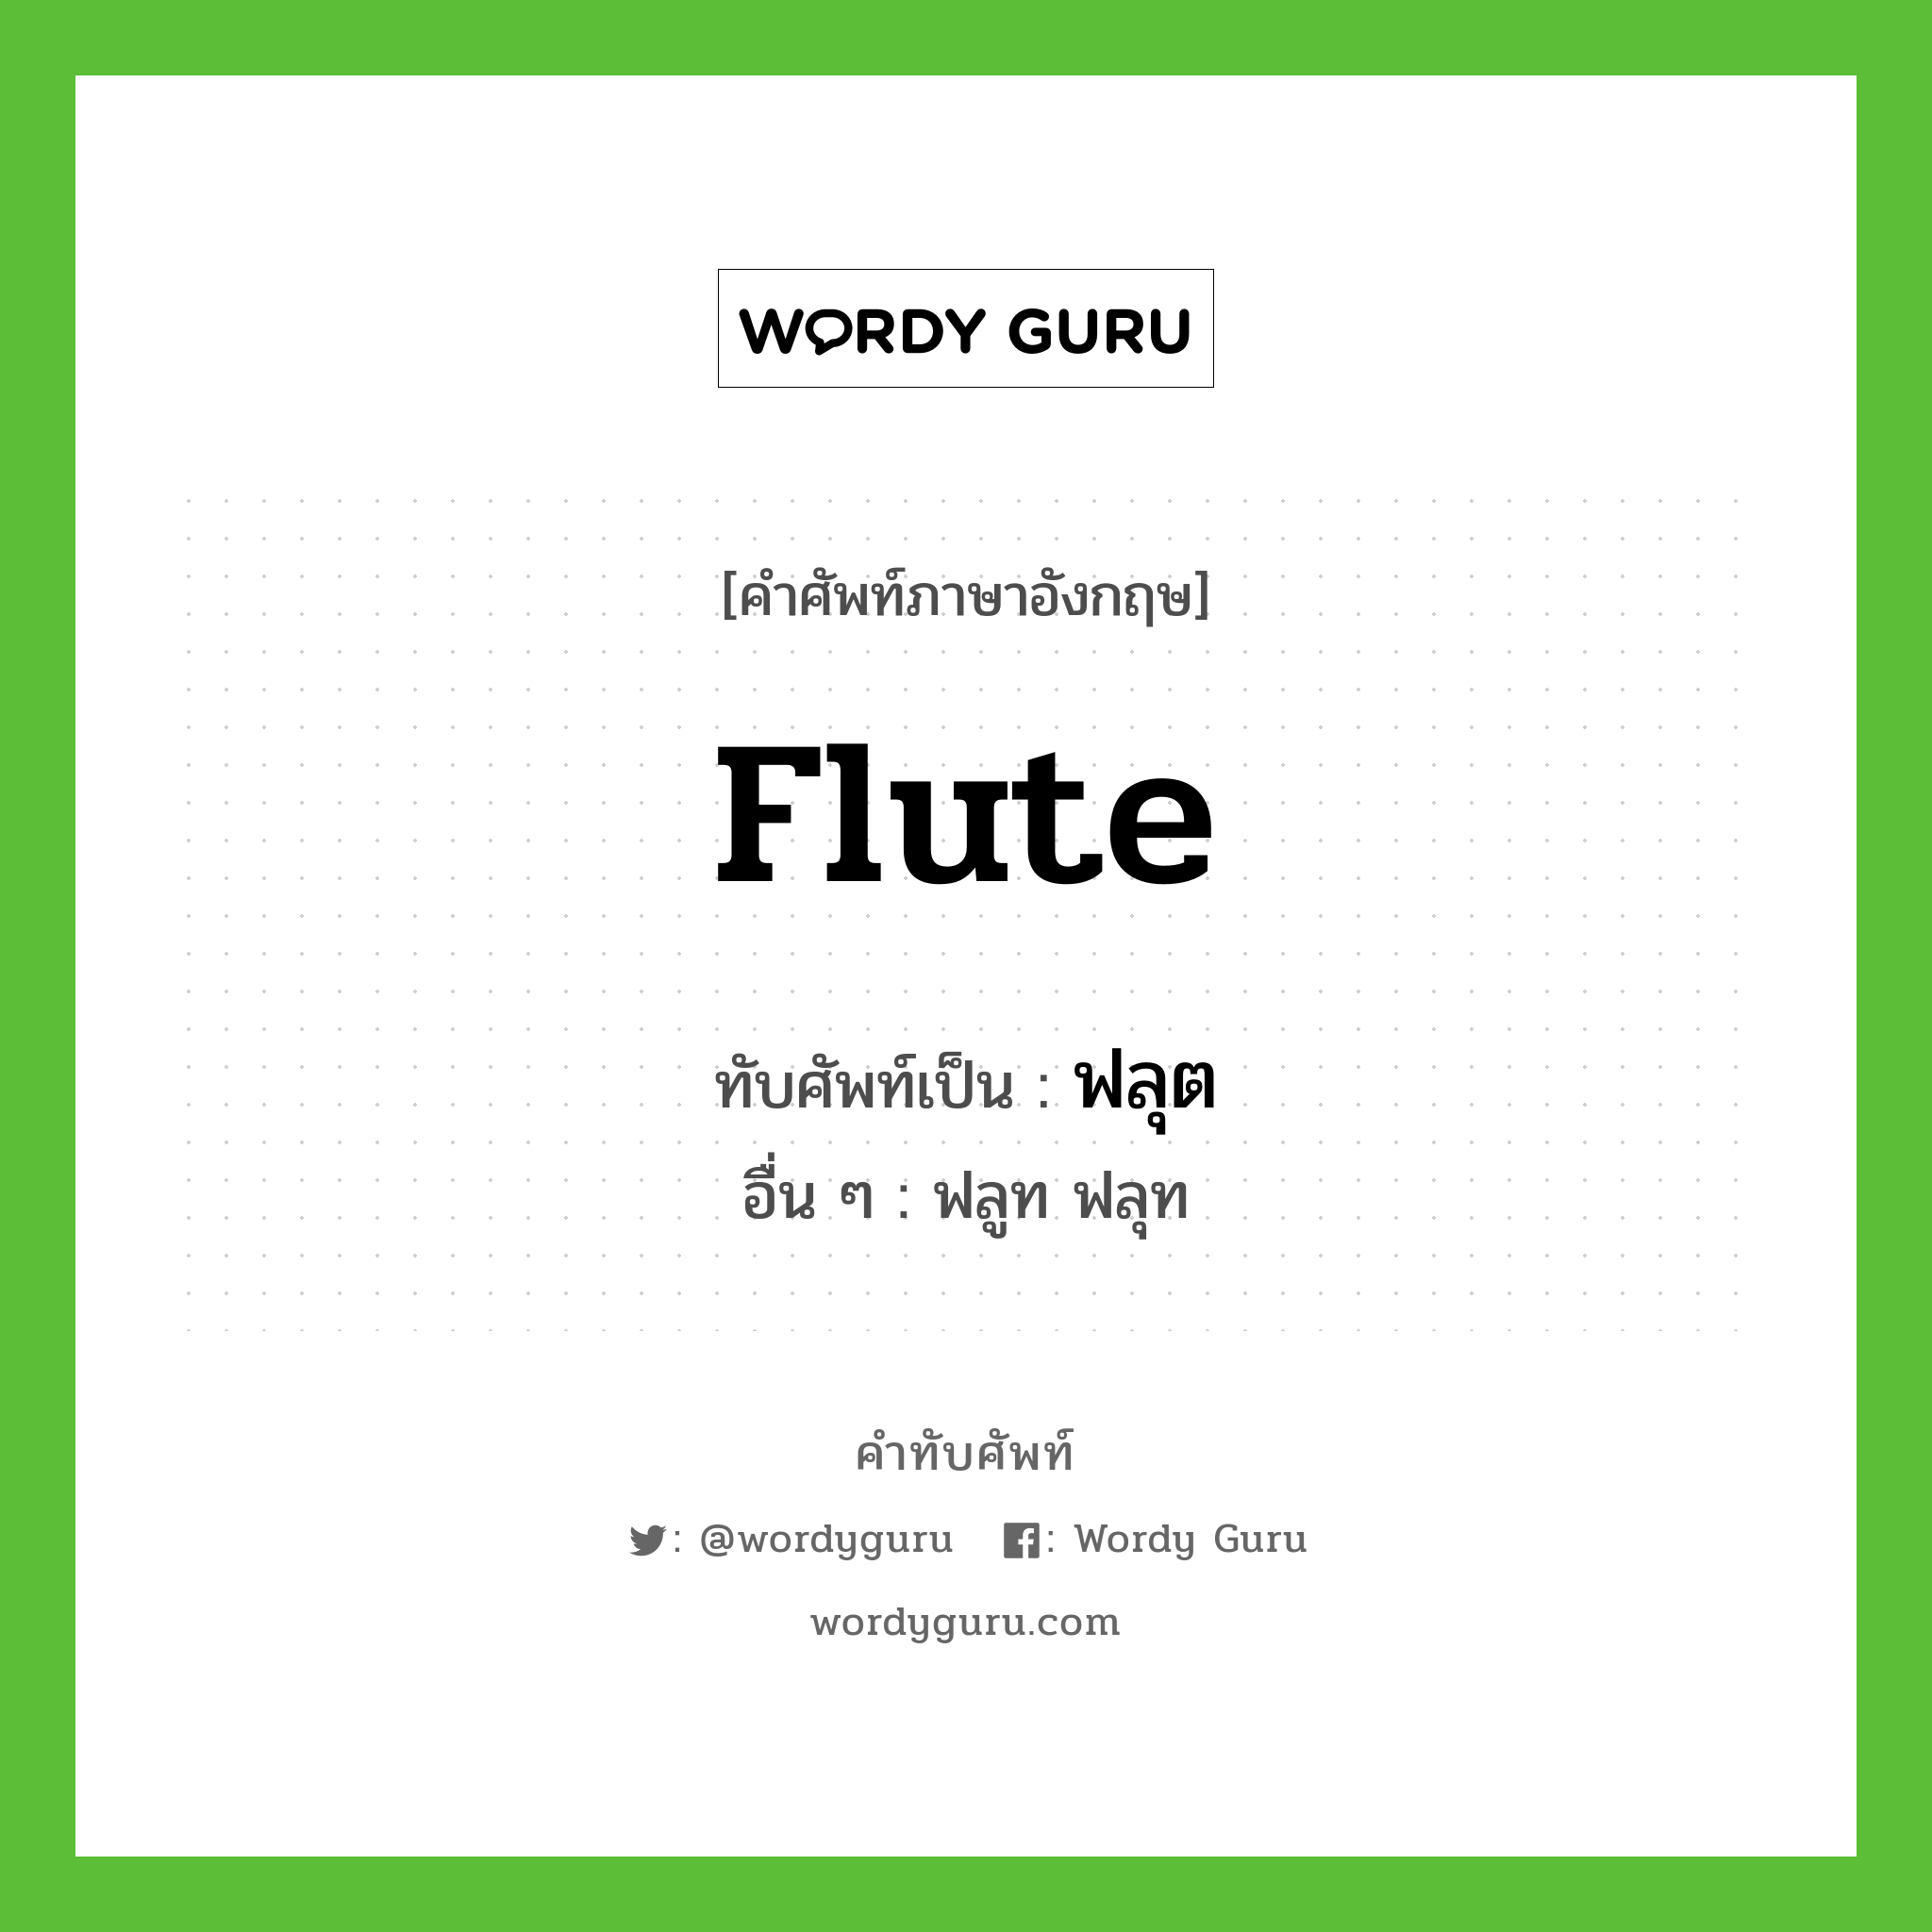 ฟลุต เขียนอย่างไร?, คำศัพท์ภาษาอังกฤษ ฟลุต ทับศัพท์เป็น flute อื่น ๆ ฟลูท ฟลุท